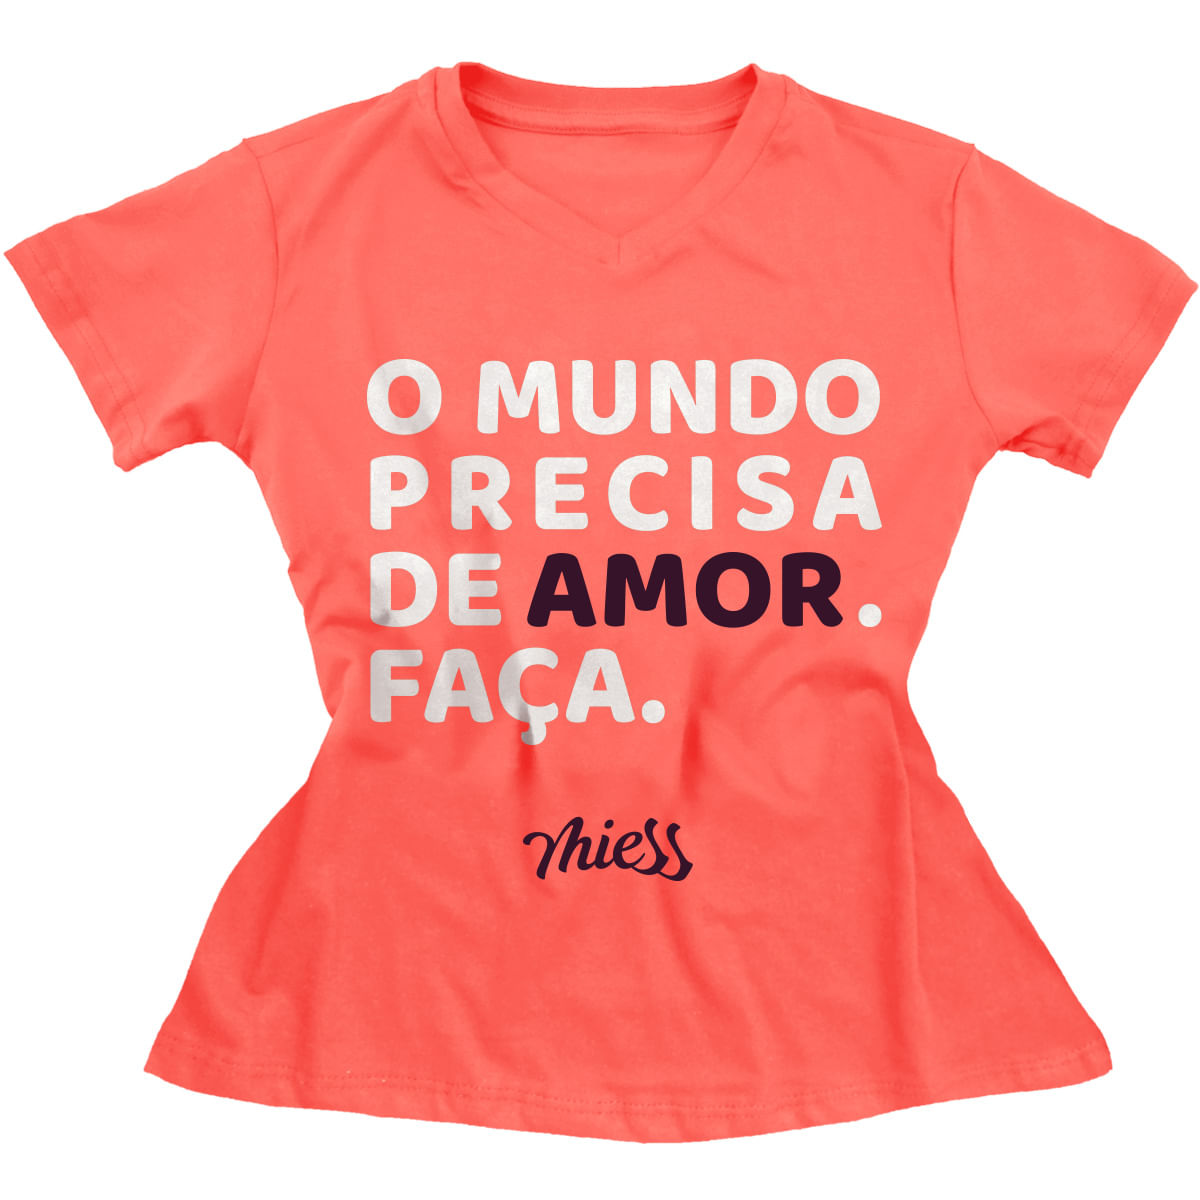 Mimo Camiseta Masculina O Mundo Precisa de Amor. Faça. Miess